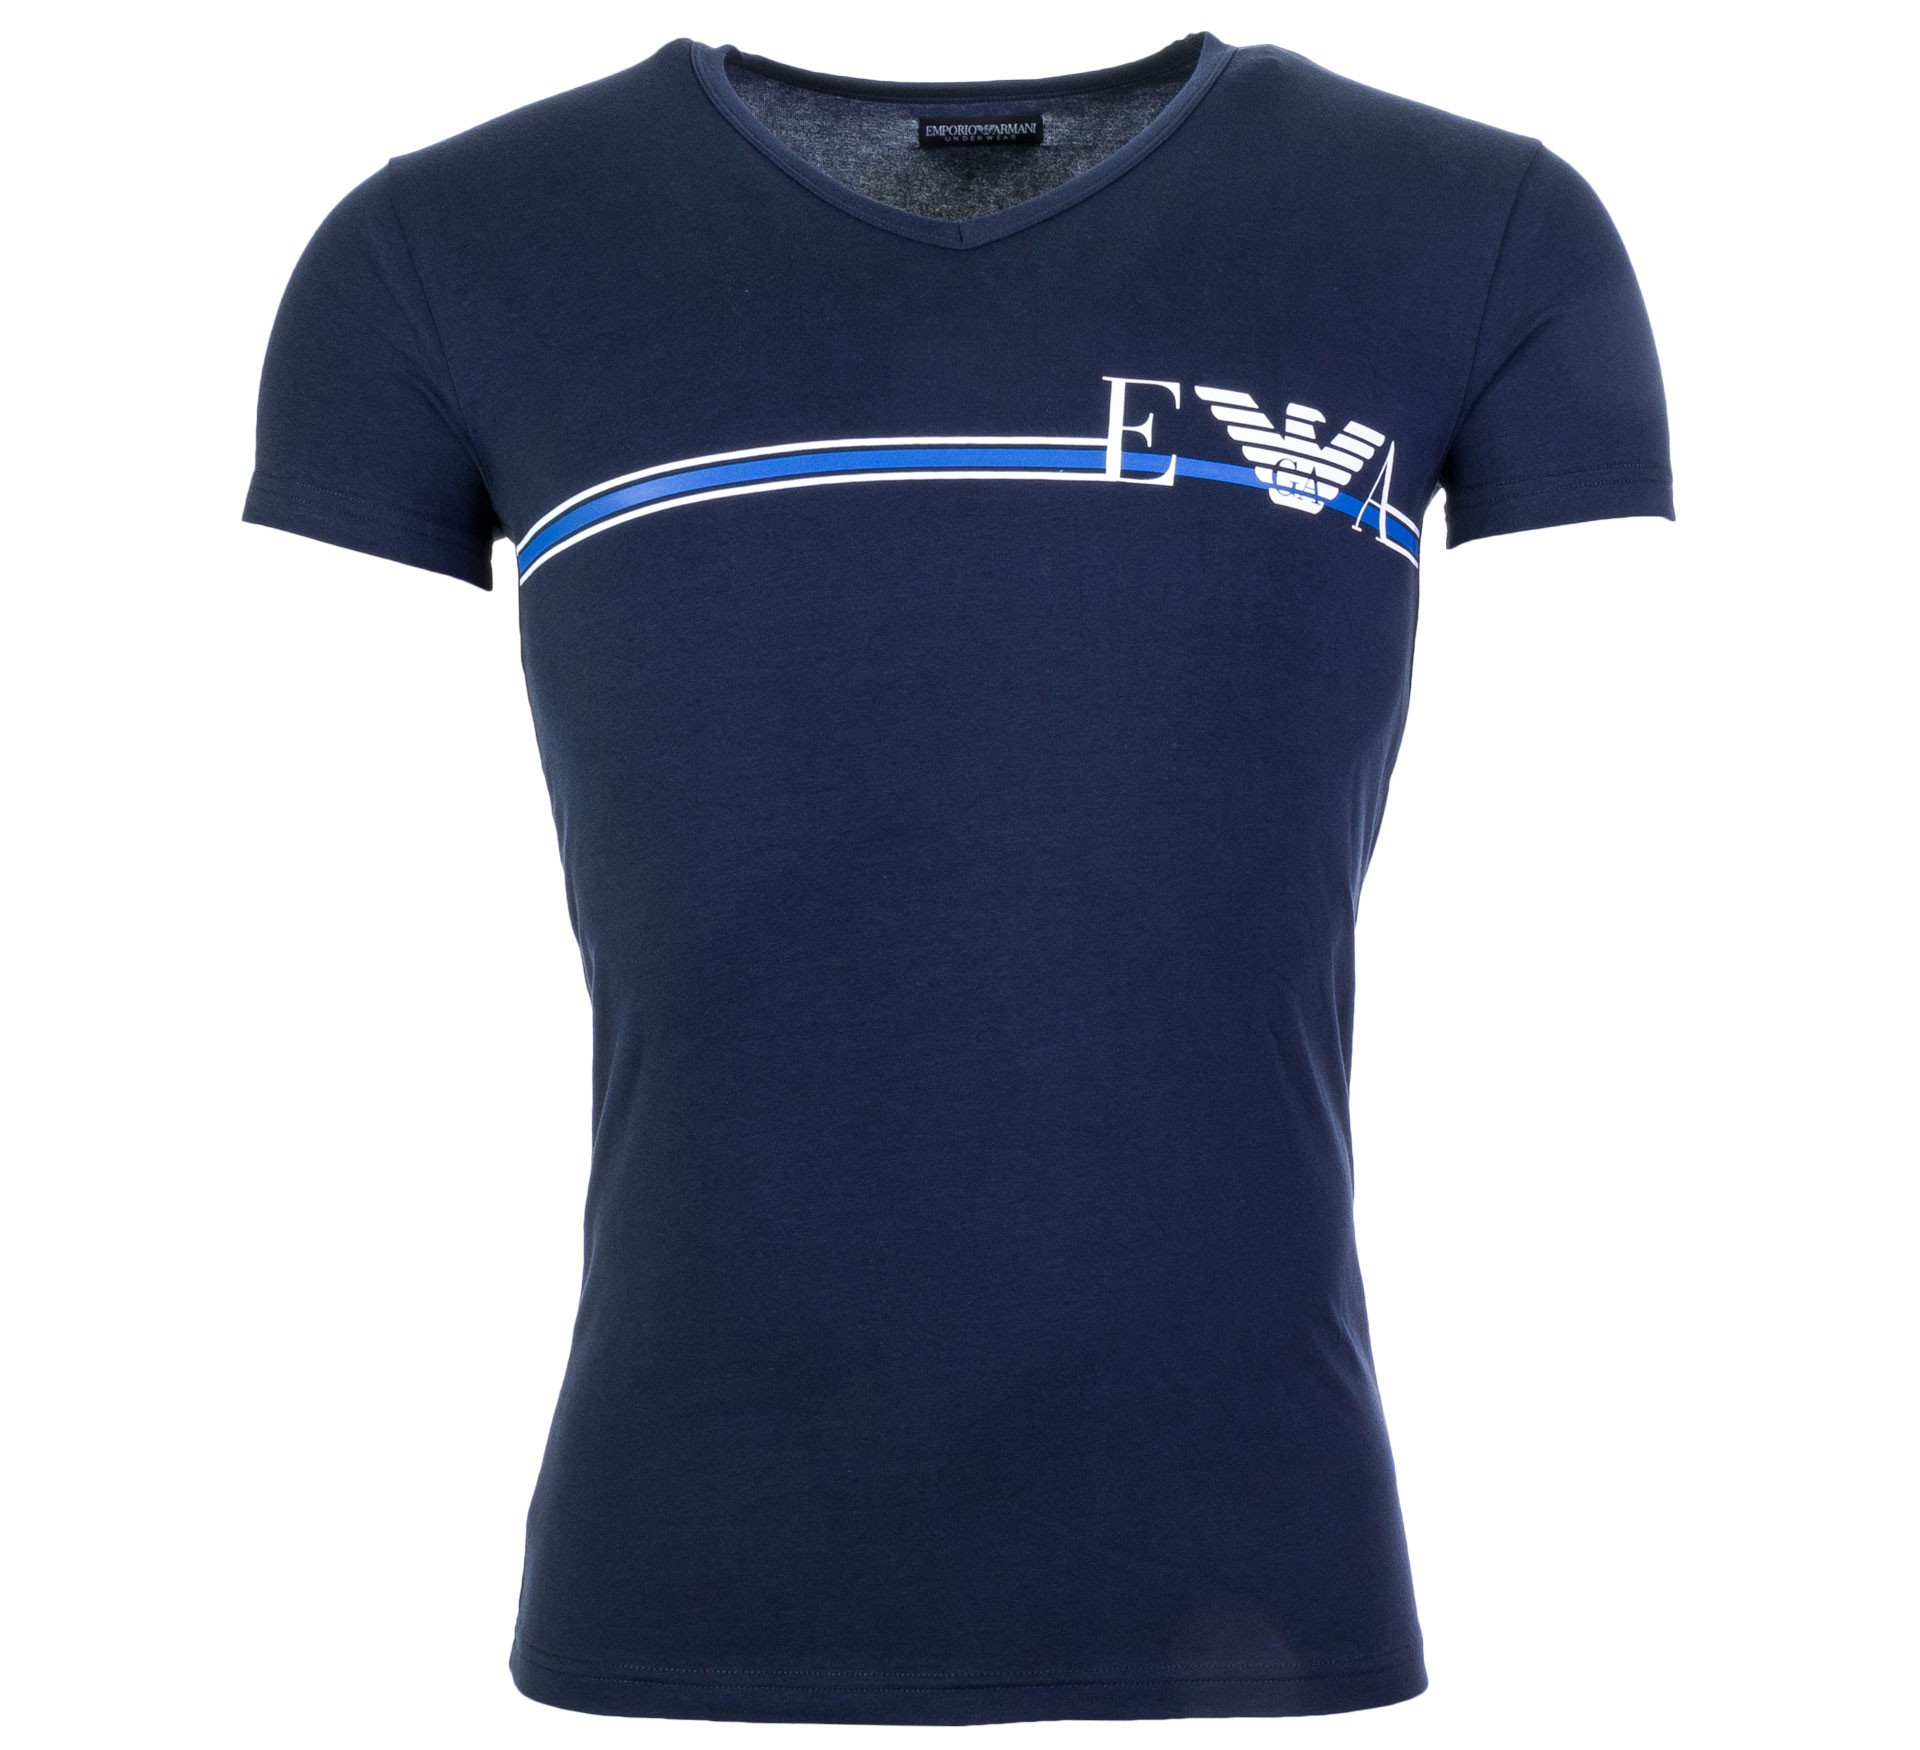 Plutosport - Emporio Armani V-neck T-shirt S/Sleeve